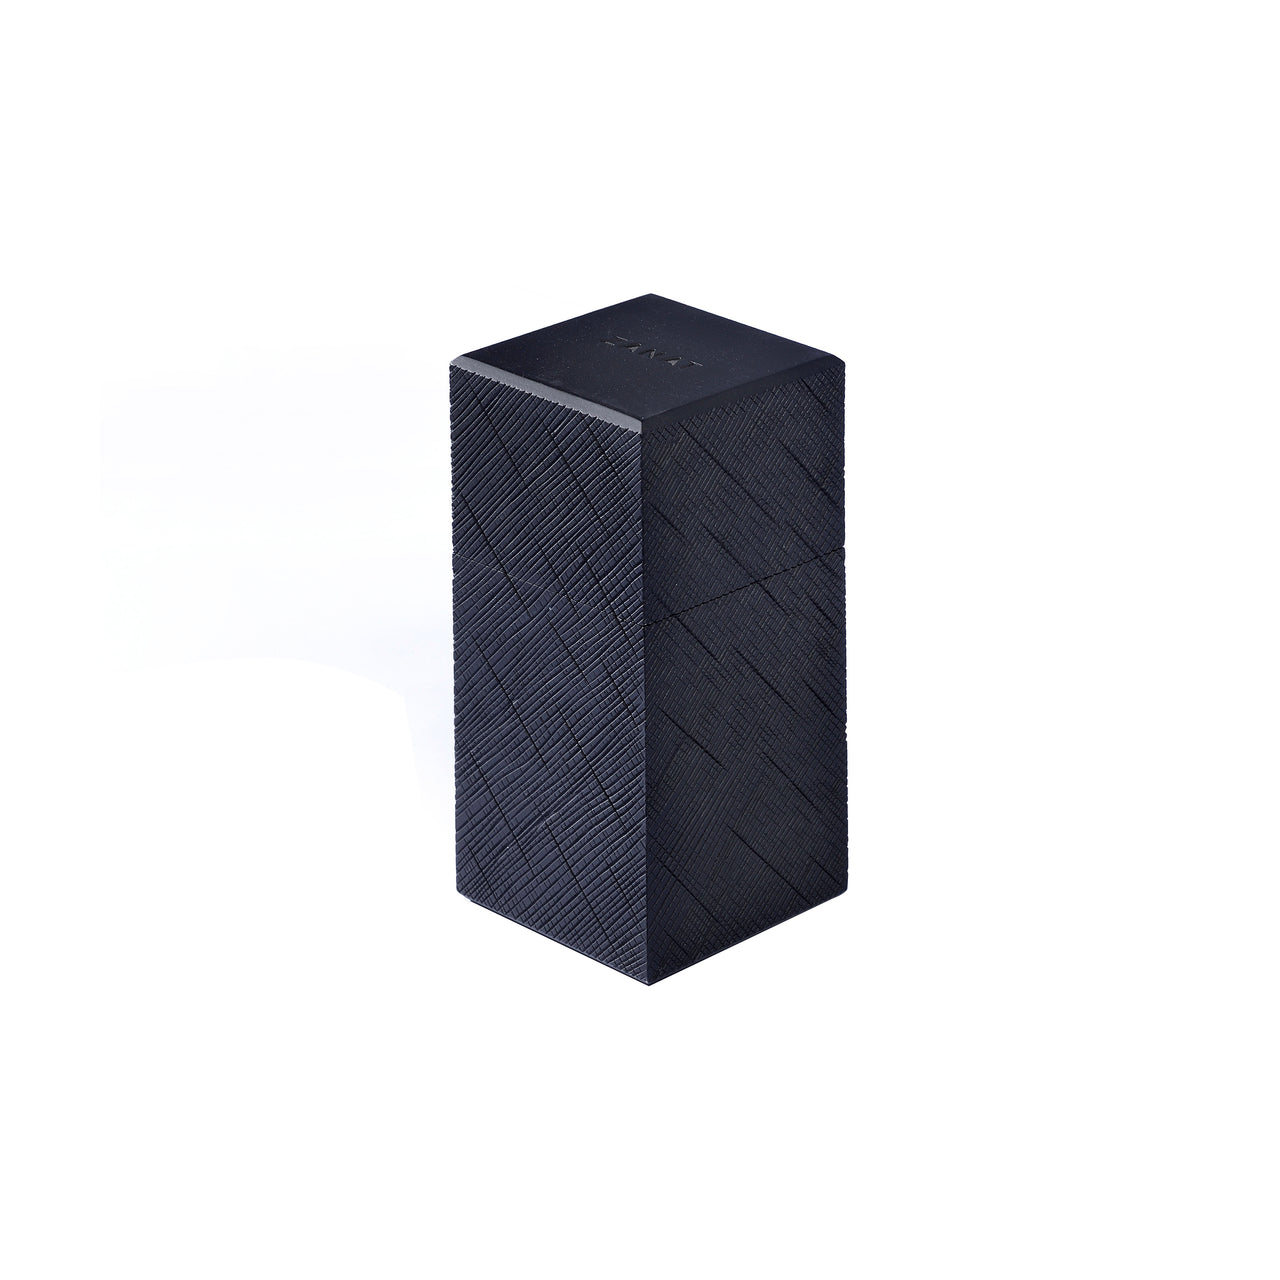 Kioko Pen Box: Black Maple